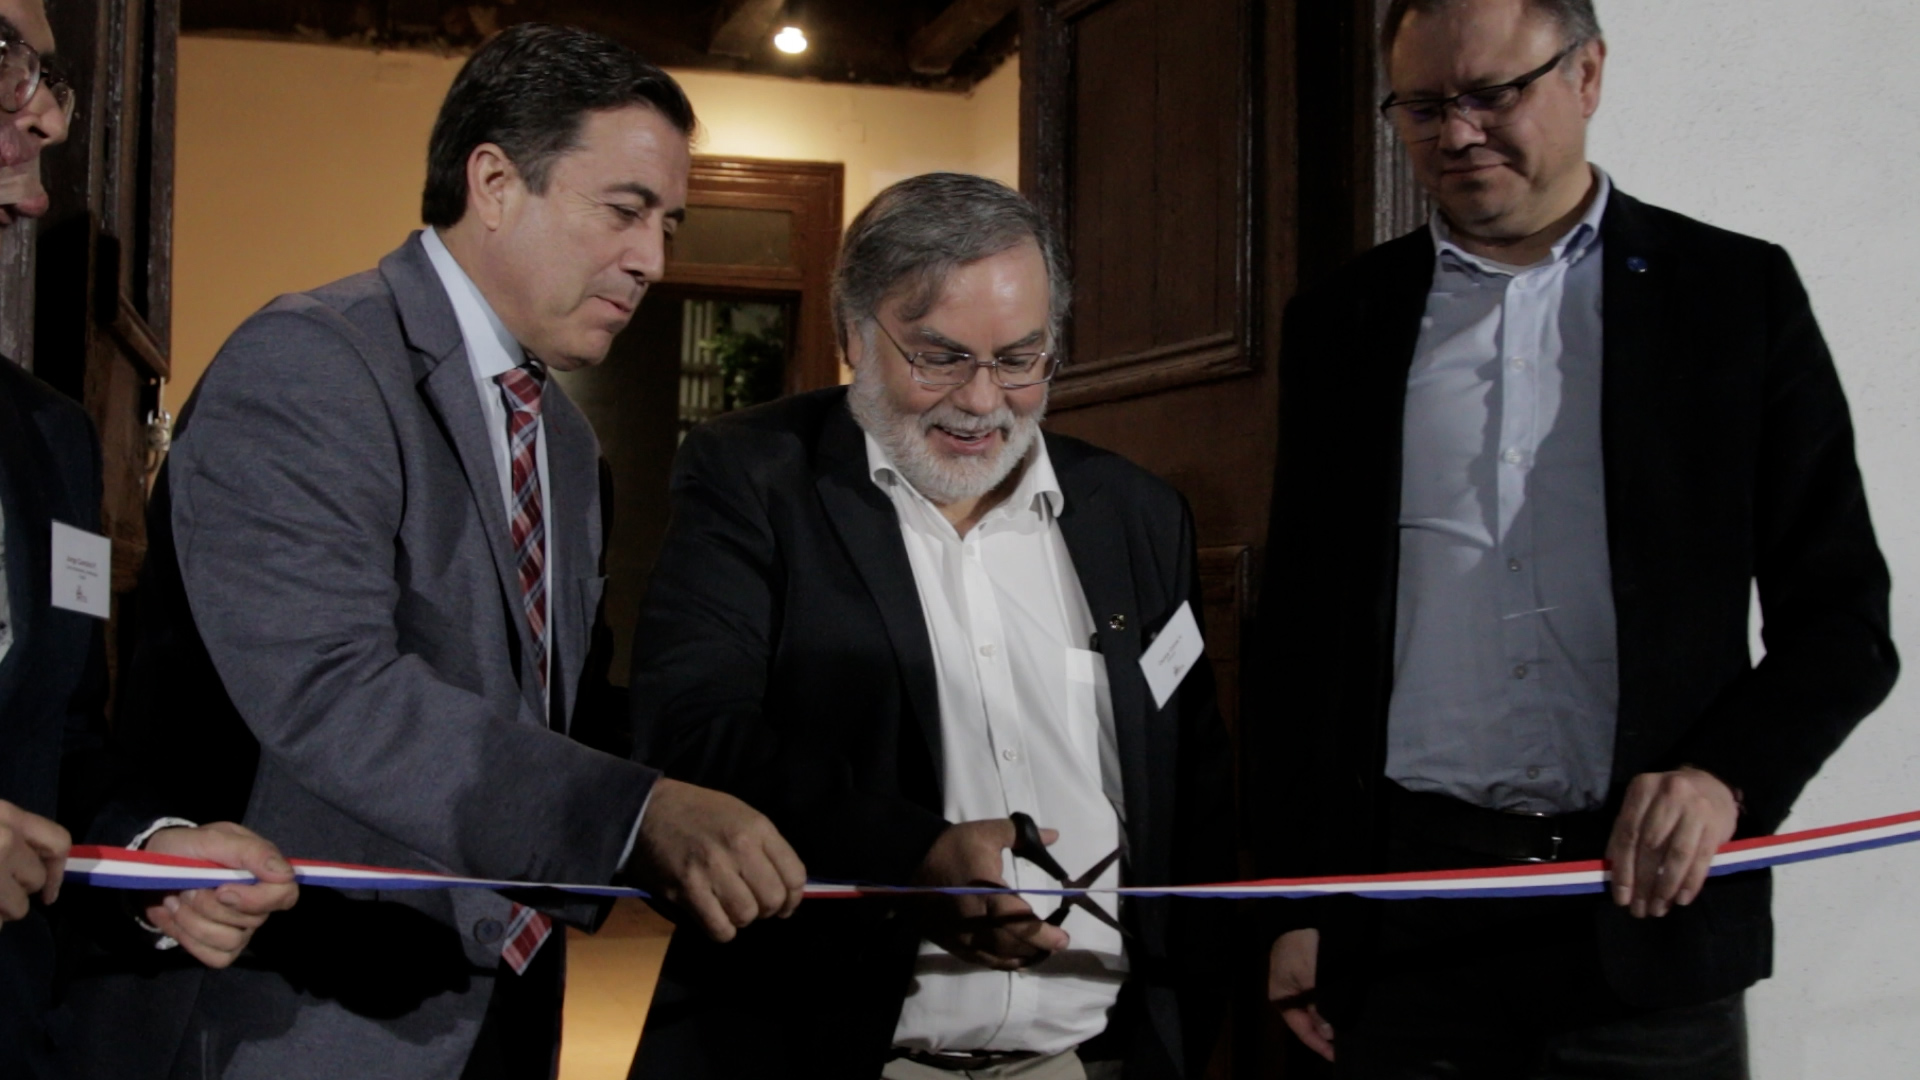 Con el apoyo de la Universidad de Valparaíso reabre Museo Arqueológico de Los Andes 